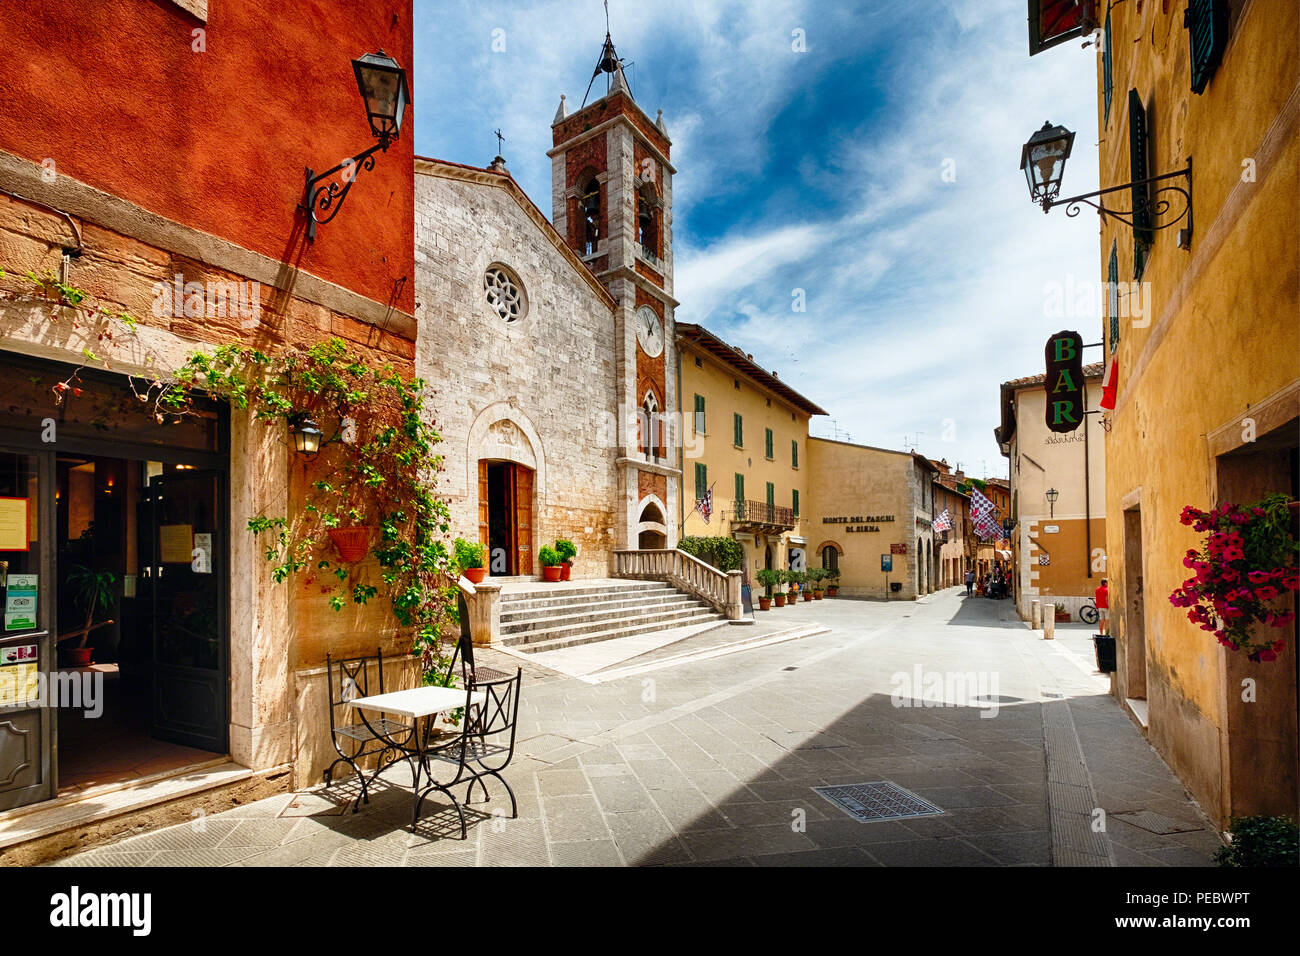 Street with a Catholic Church, San Quirico, Tuscany, Italy Stock Photo